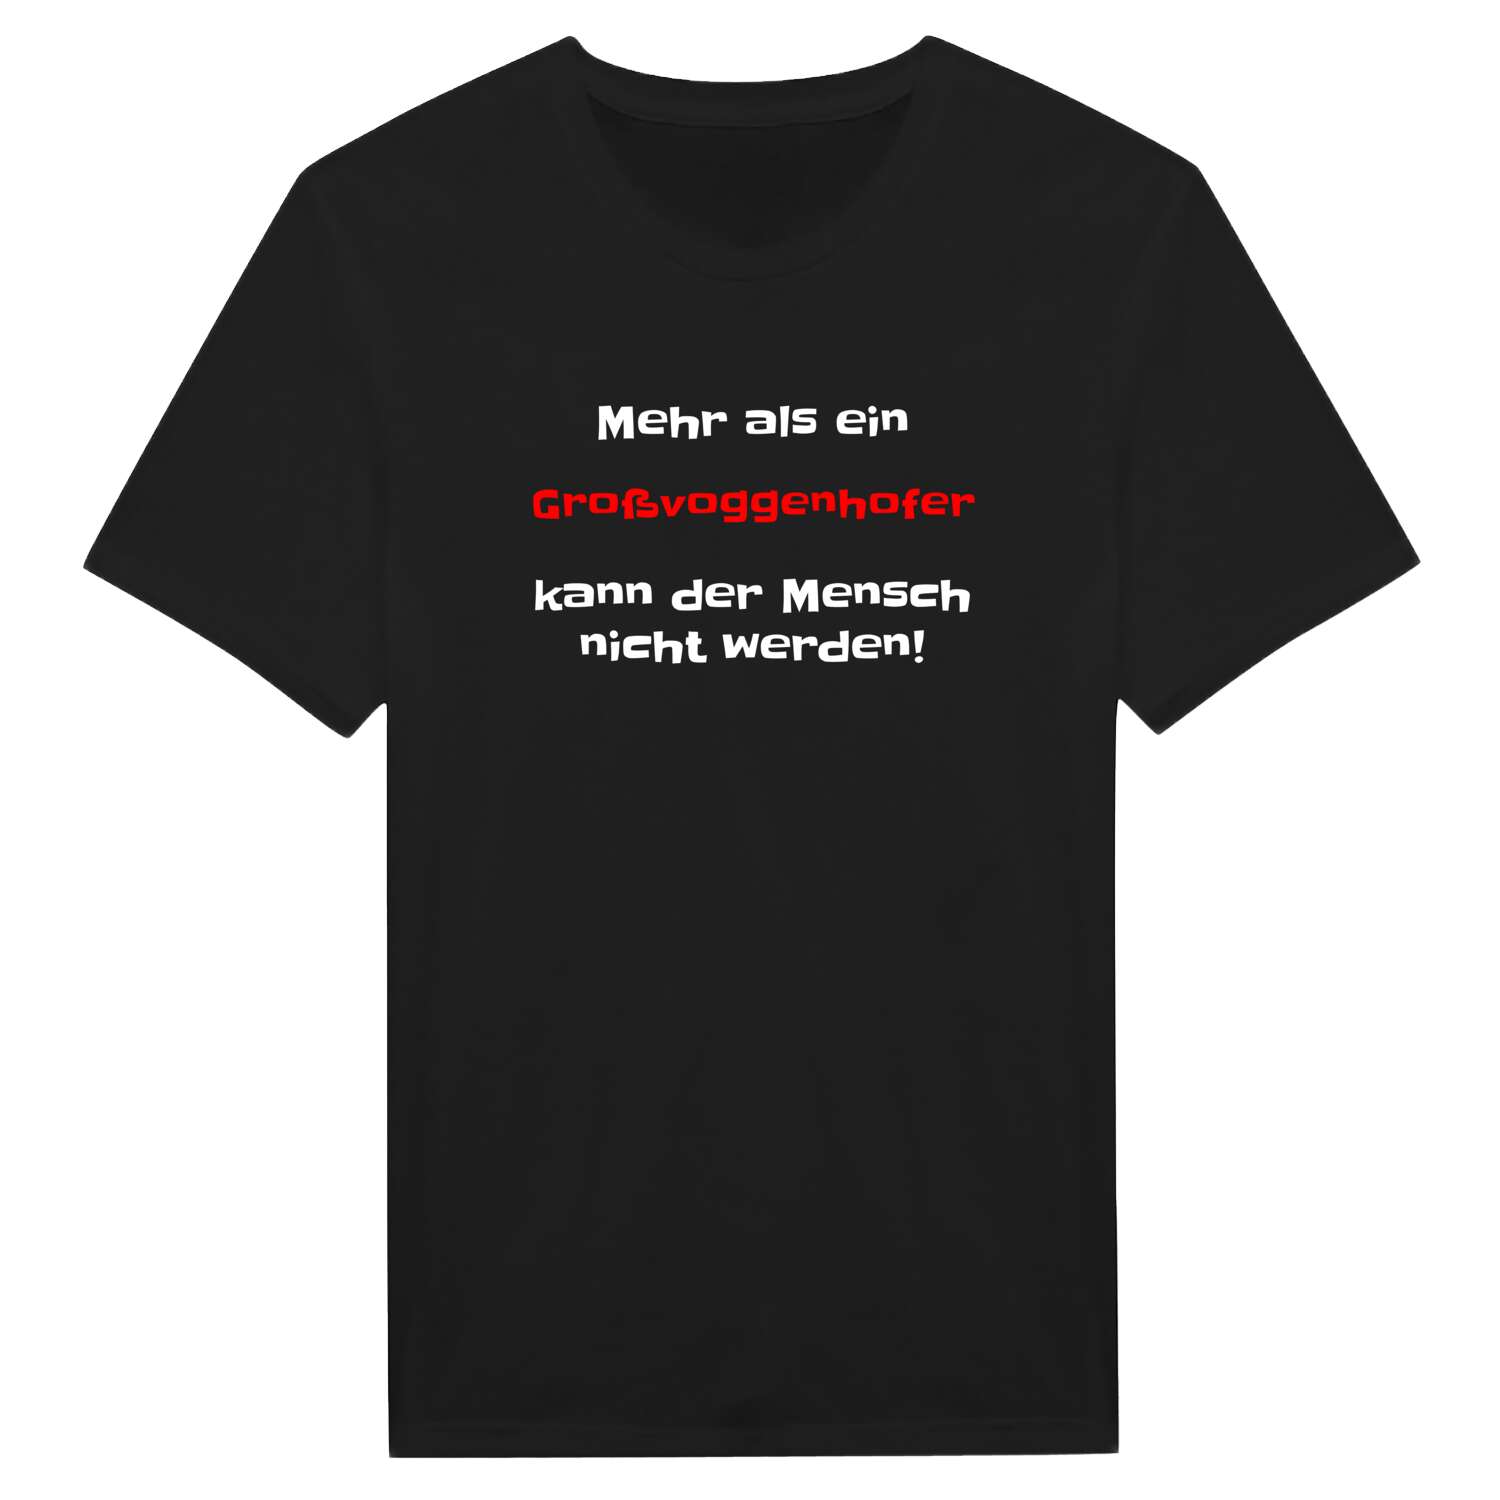 Großvoggenhof T-Shirt »Mehr als ein«